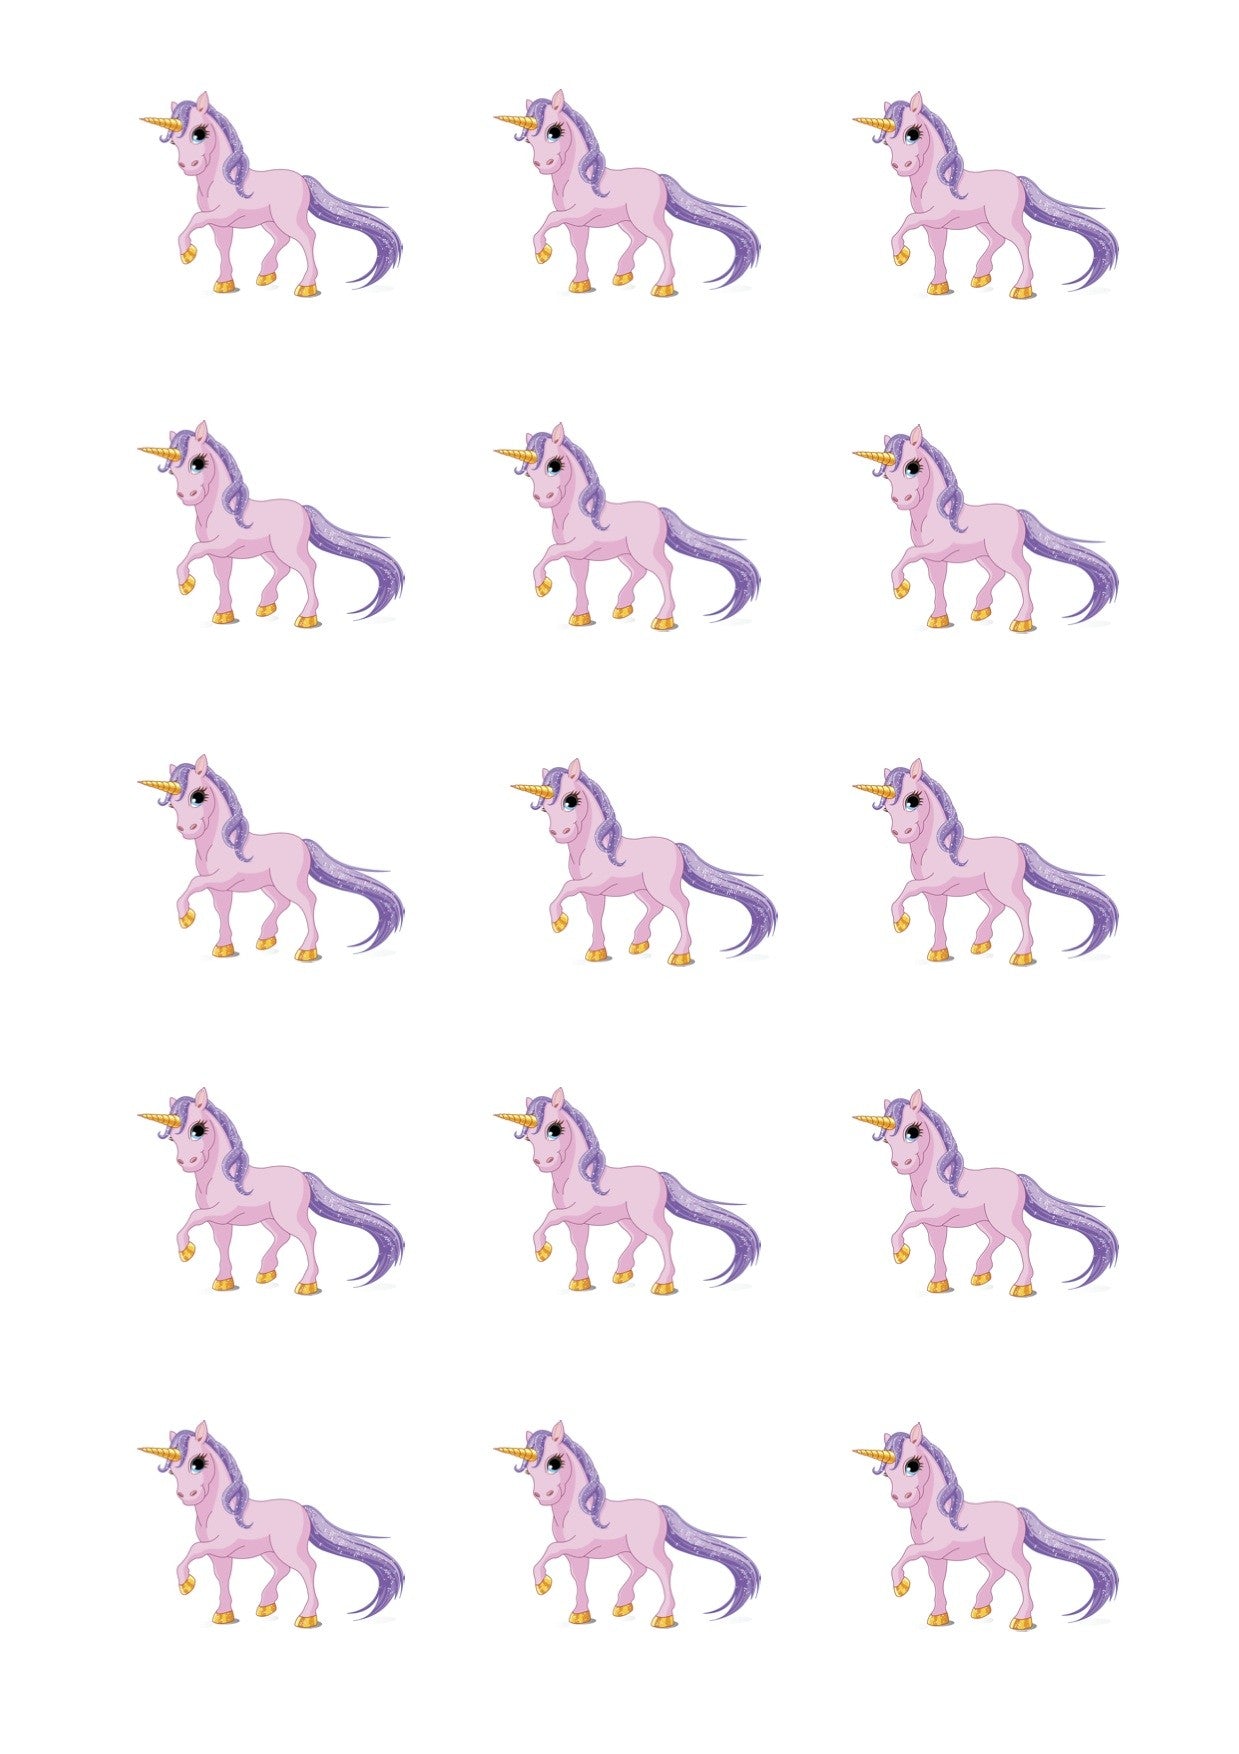 Design Sheet edible image Pink Unicorns